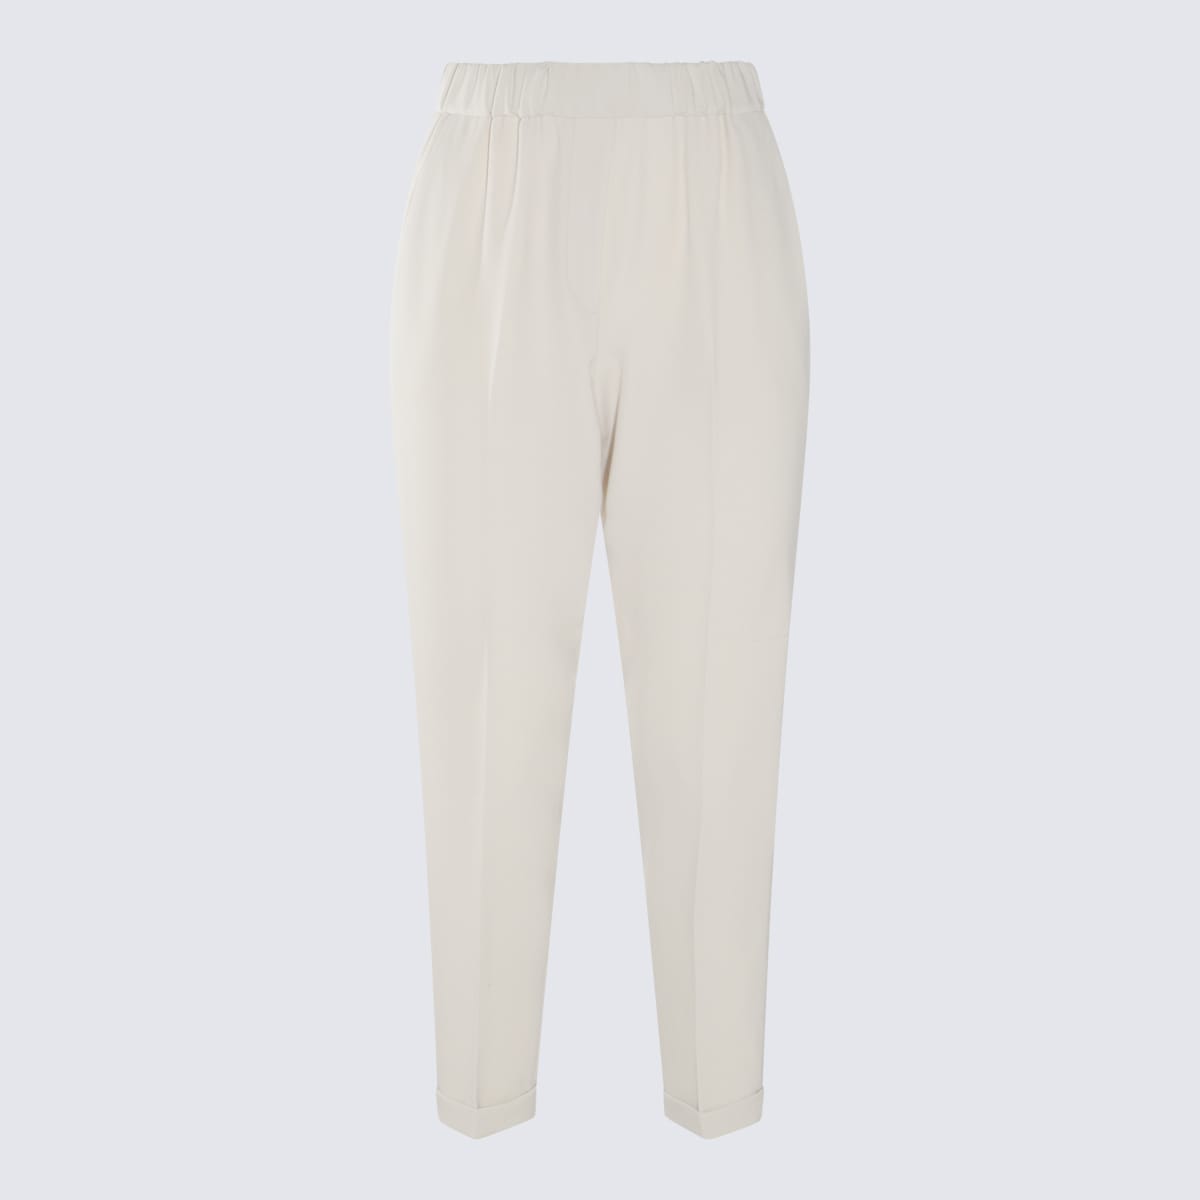 Shop Antonelli White Cotton Pants